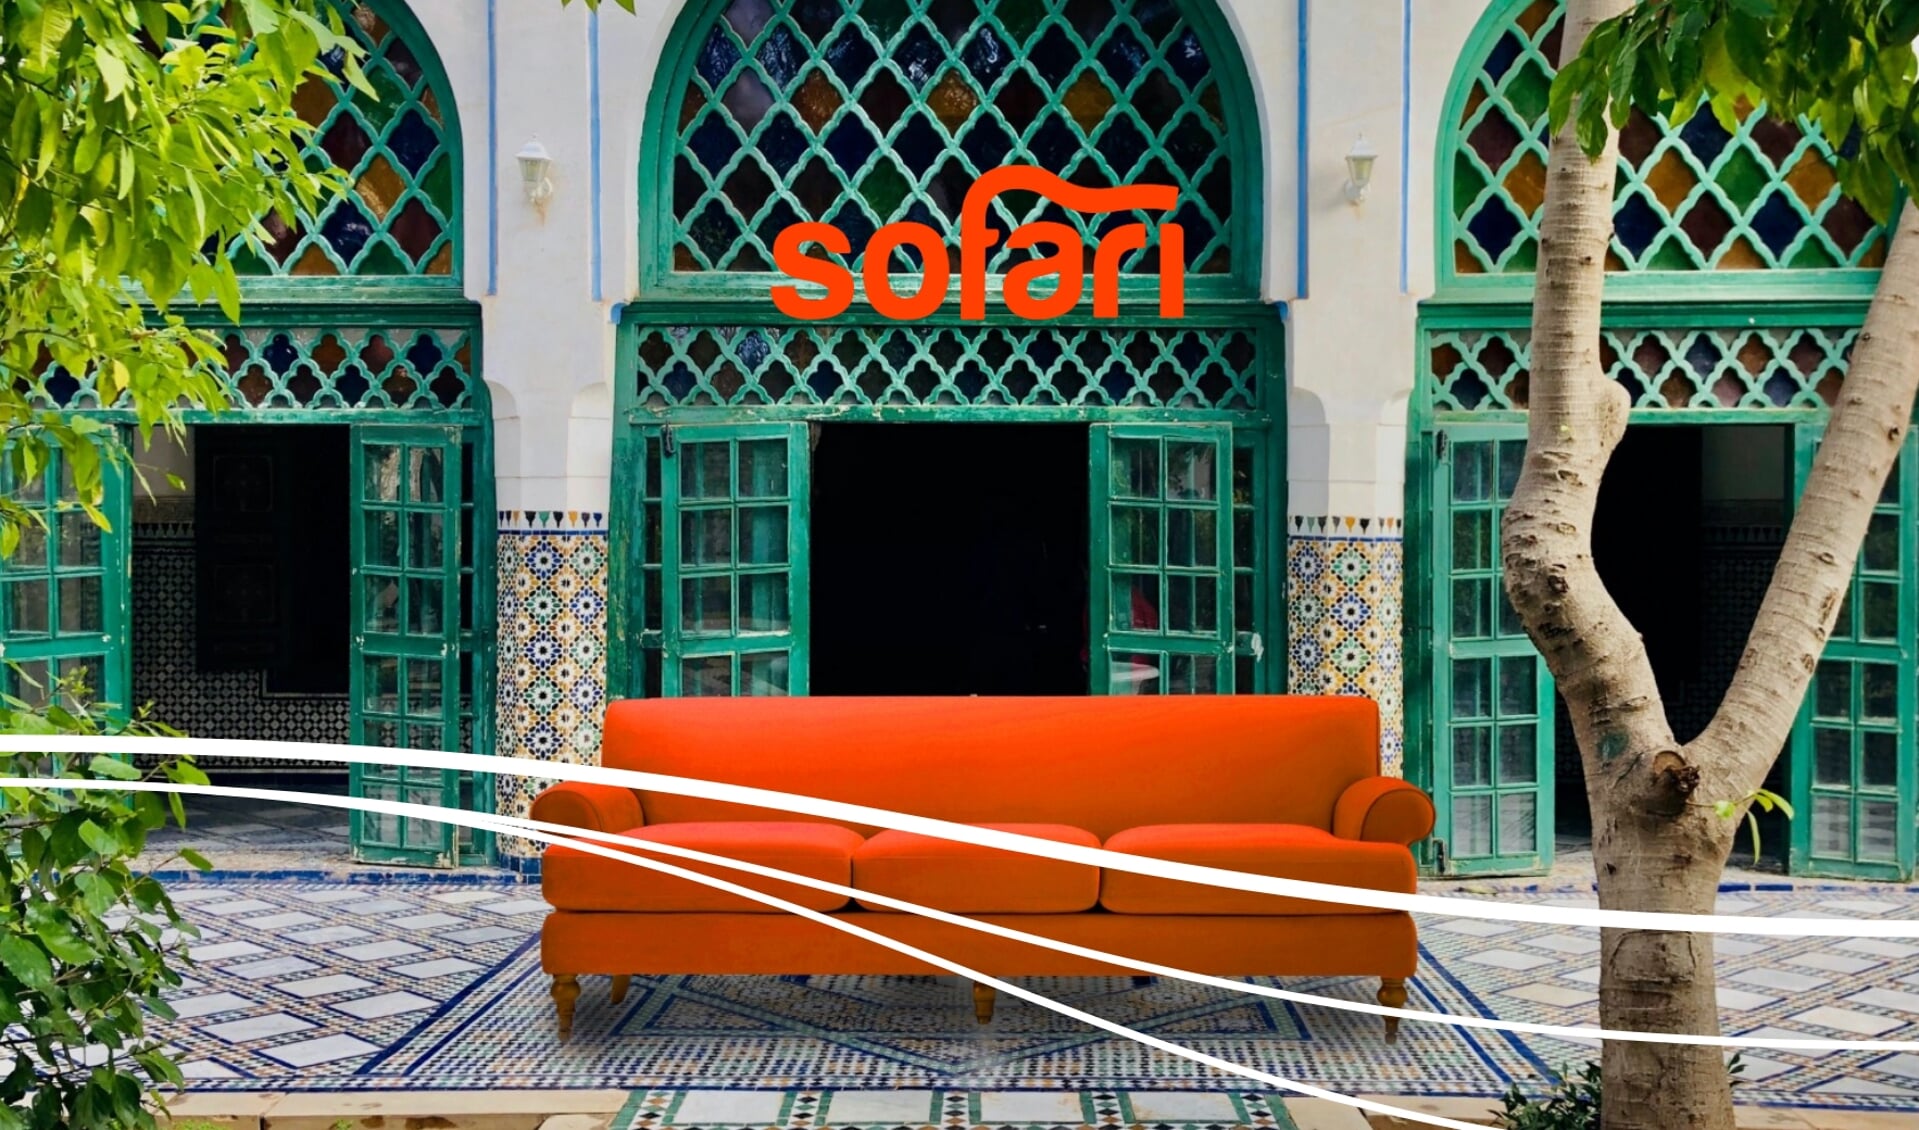 Breng een virtueel bezoek aan Marrakesh in Theater de Lieve Vrouw